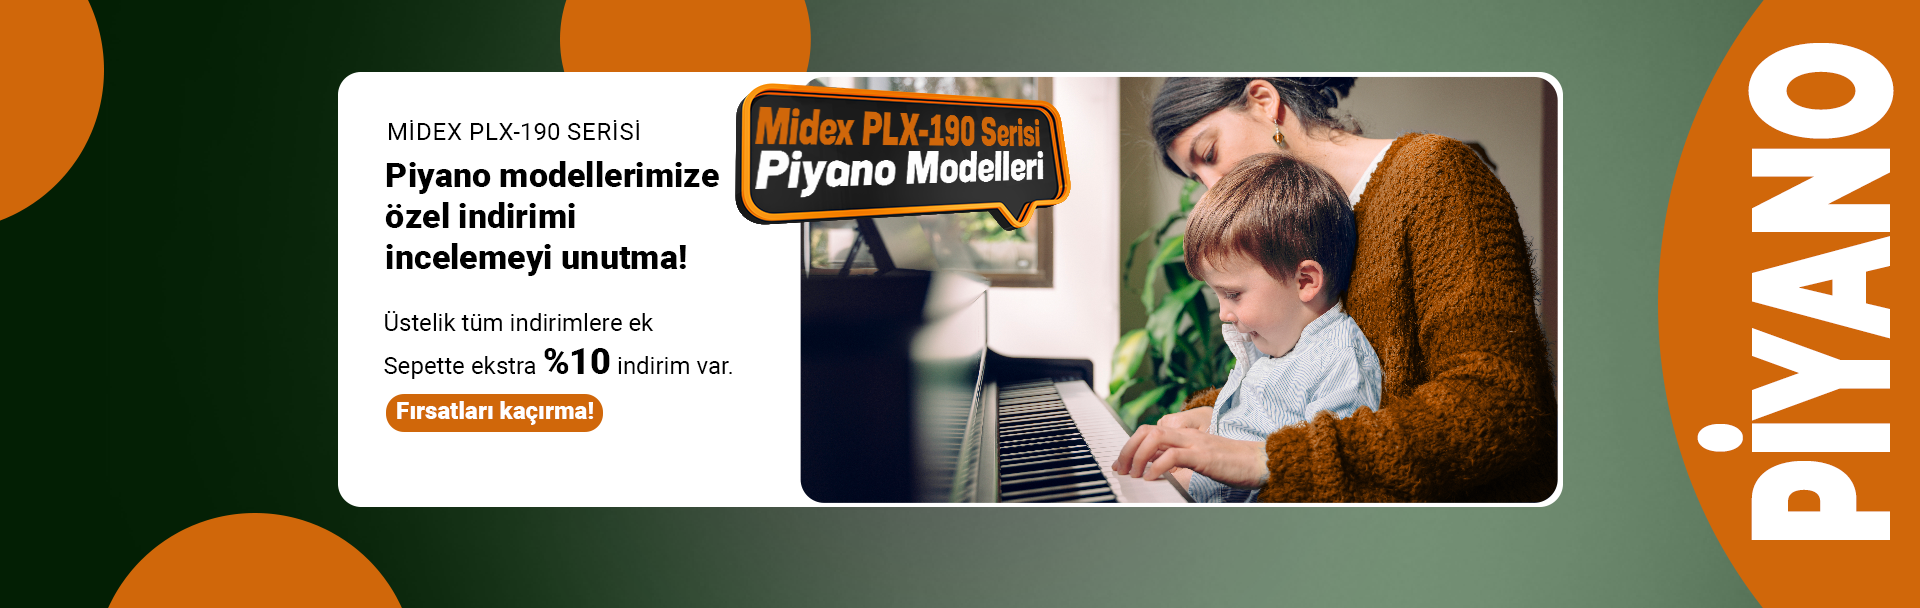 Midex PLX-190 Piyano